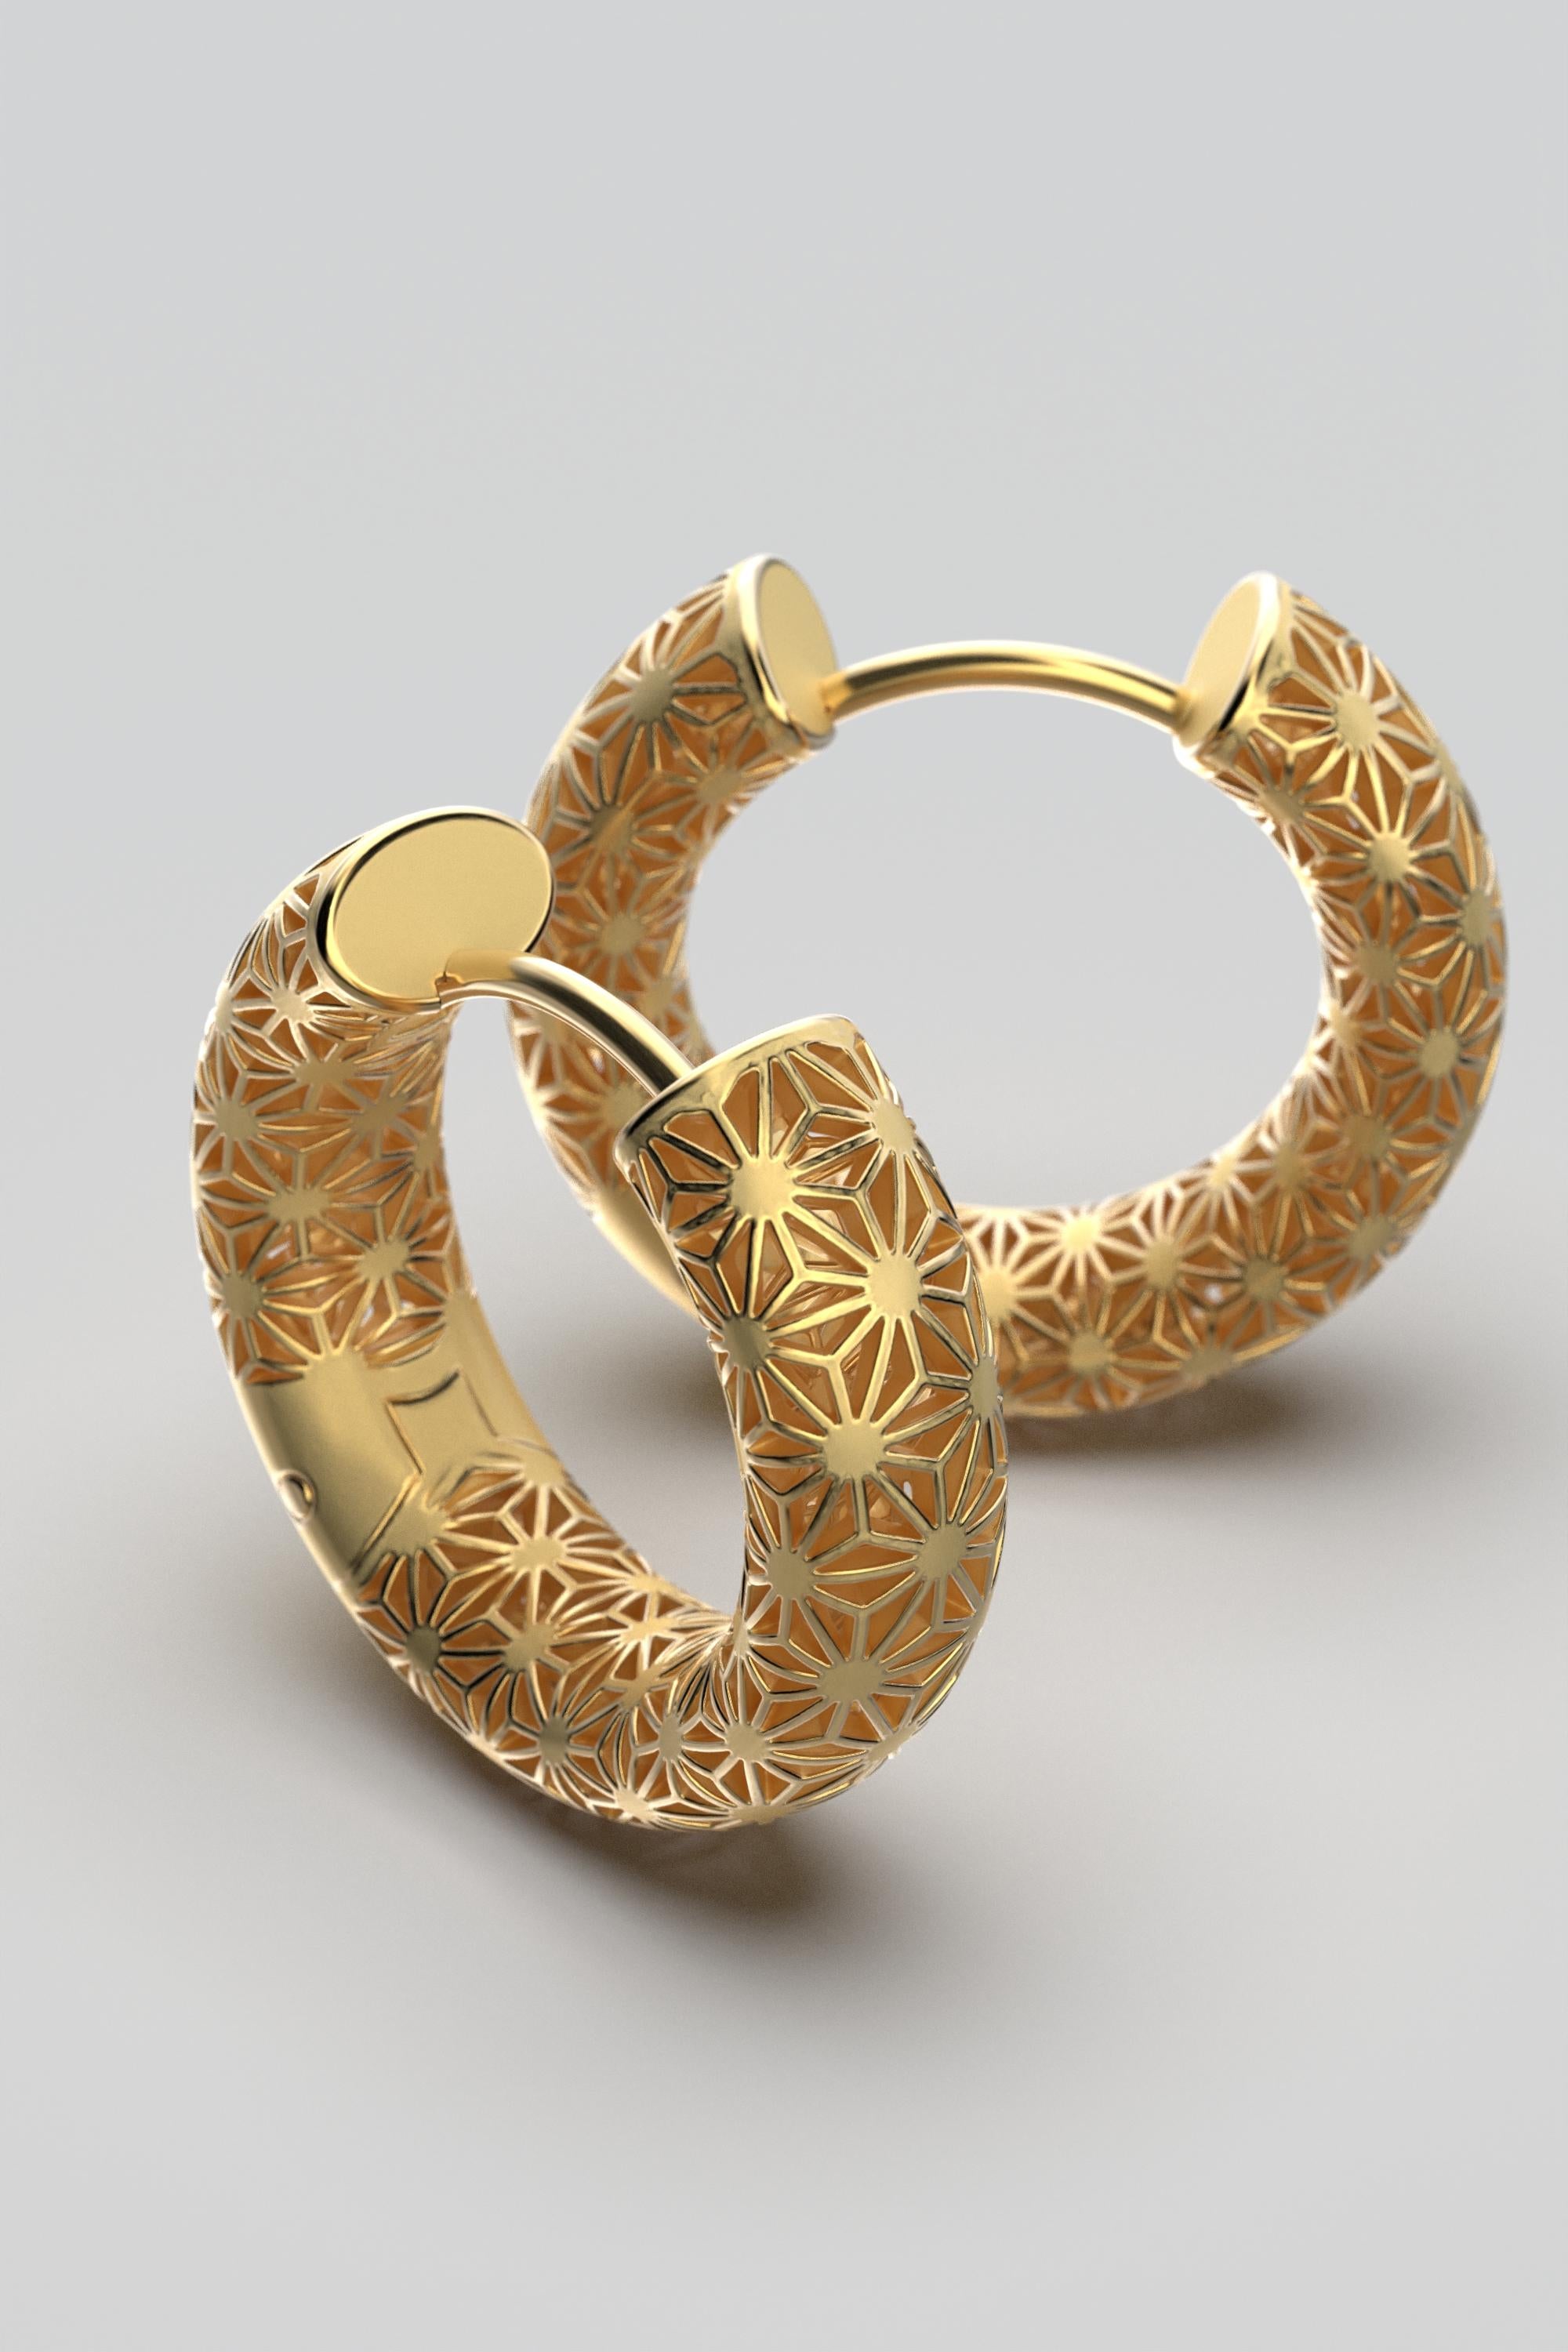  Oltremare Gioielli 18K Italian Gold Hoop Earrings - Sashiko Japanese Pattern  For Sale 4